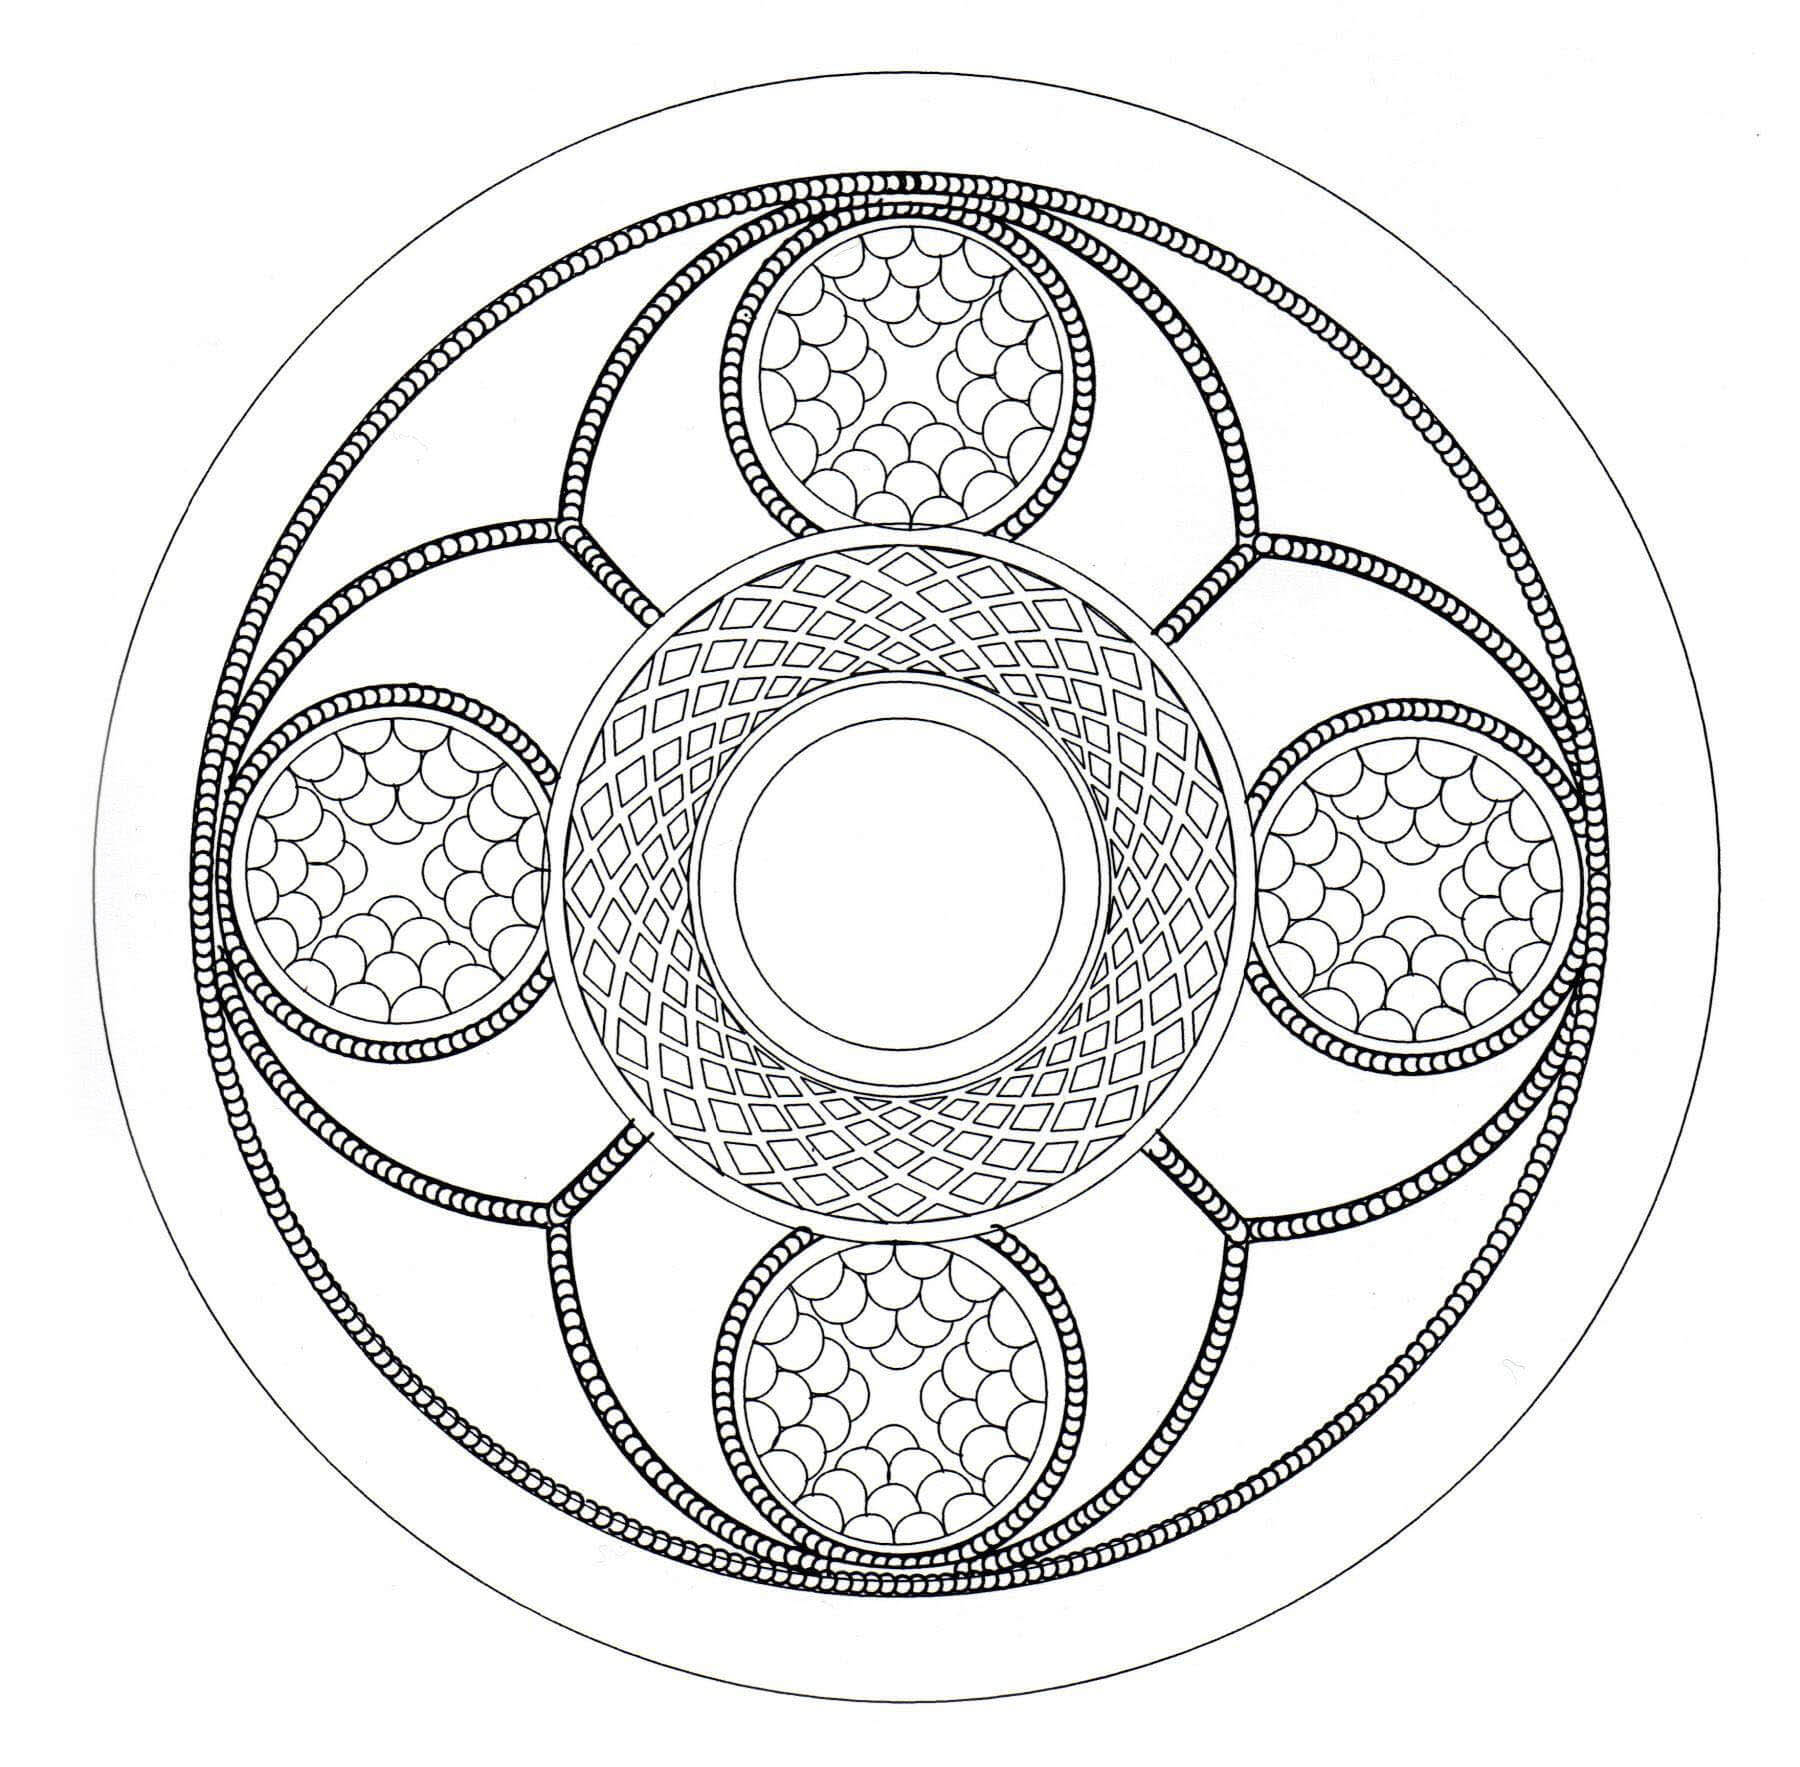 C'est parti pour des minutes de détente avec ce superbe Mandala composé de formes très symétriques, géométriques et harmonieuses.